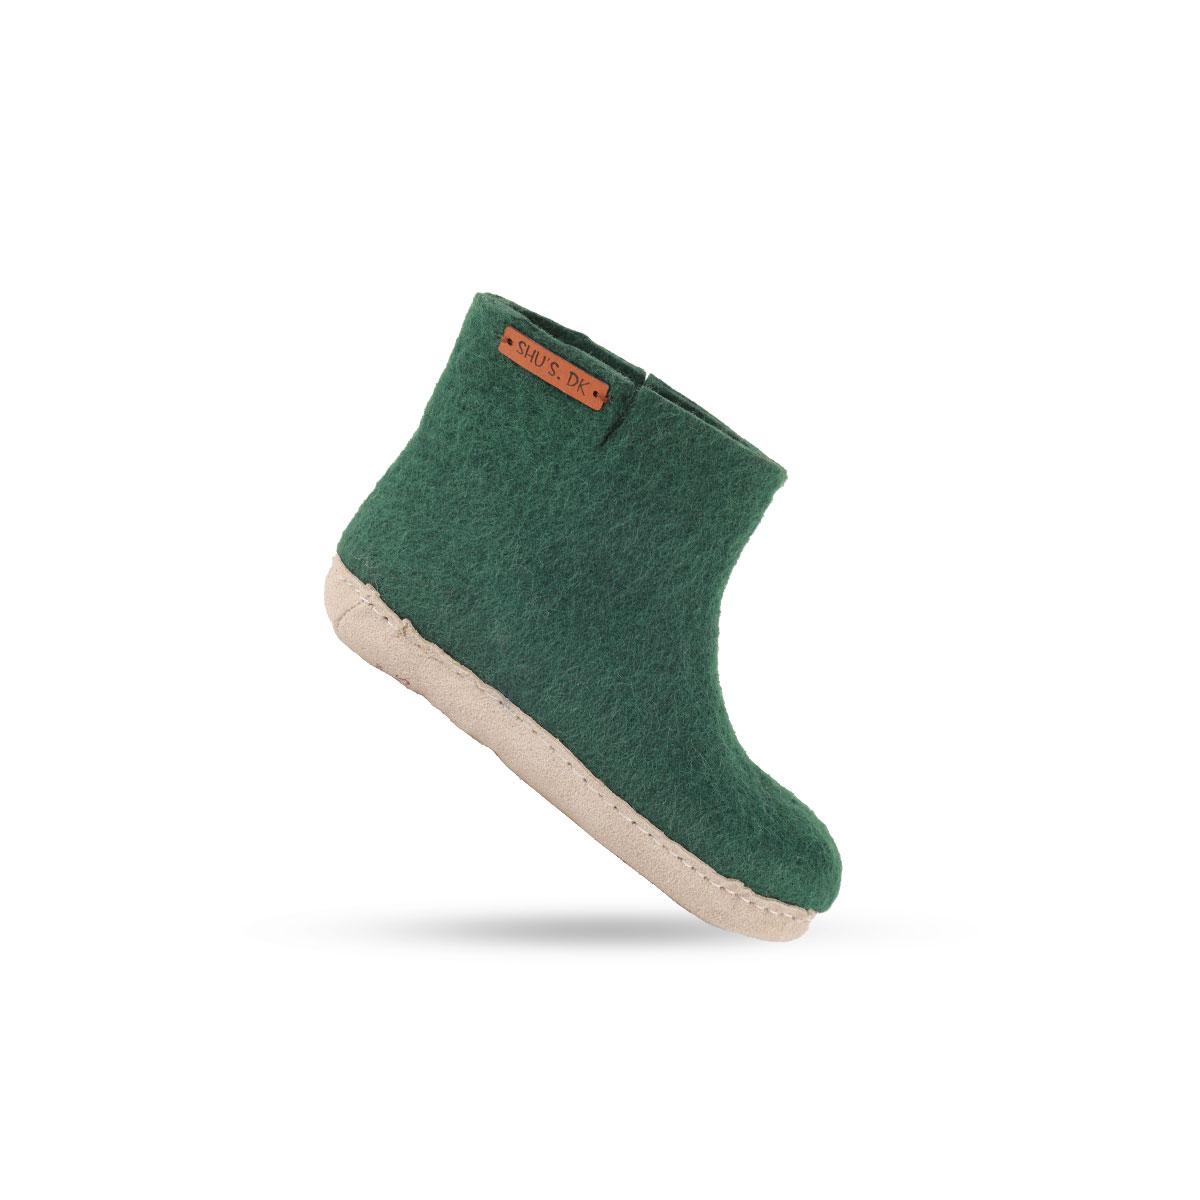 Uldstøvle til Børn (100% ren uld) - Model Grøn m/sål i skind - Dansk Design fra SHUS